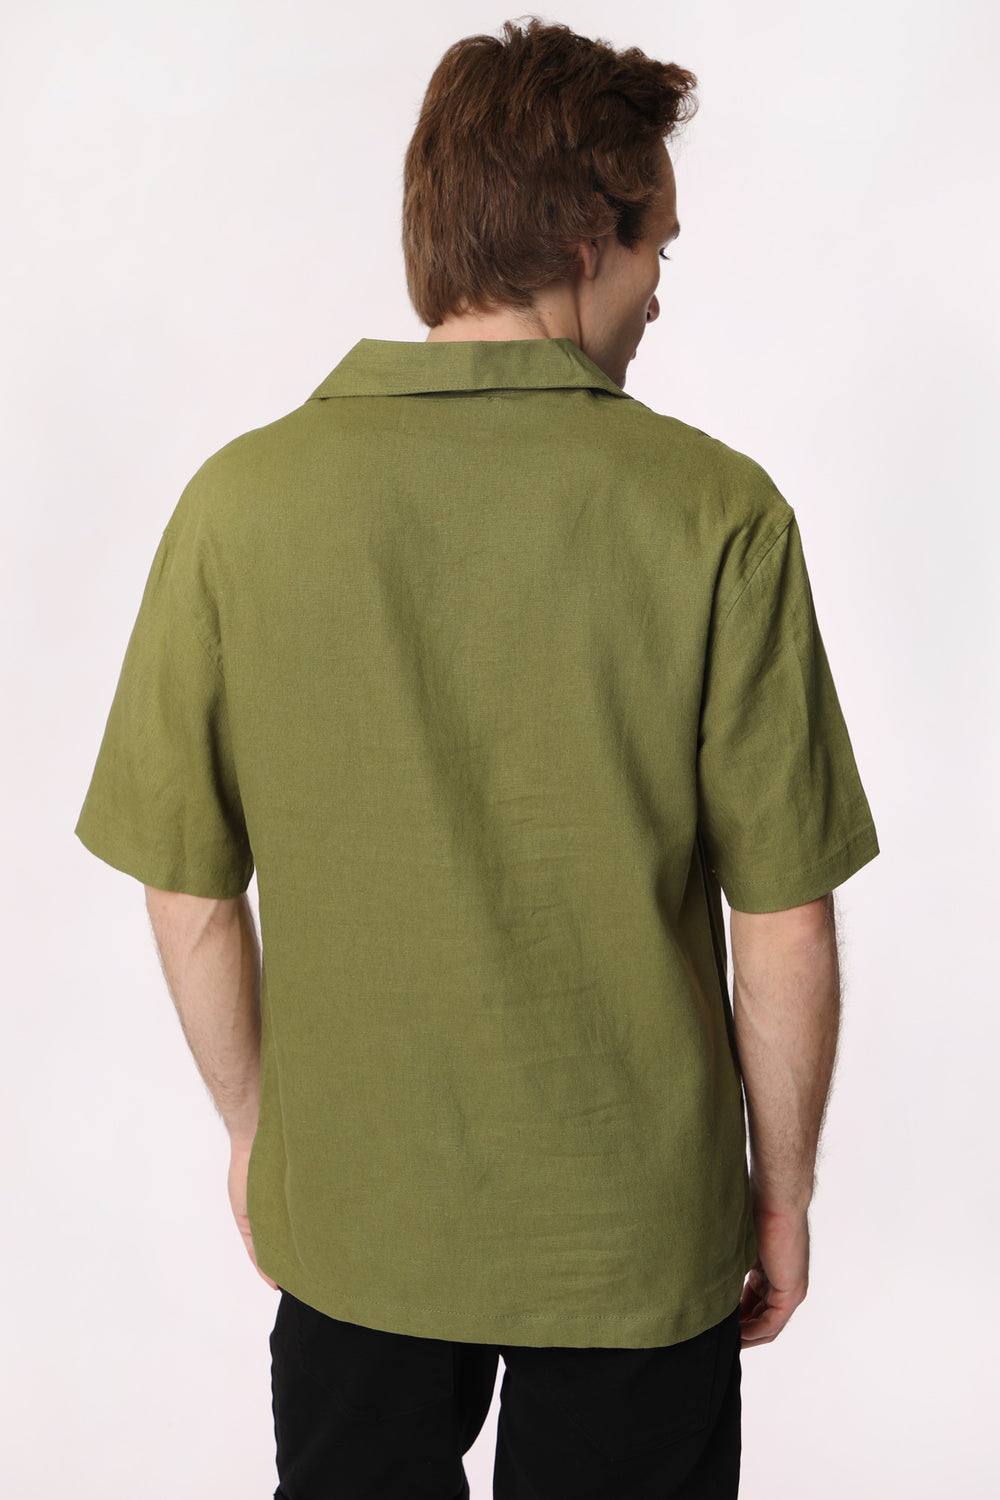 West49 Mens Linen Button-Up Dark Green